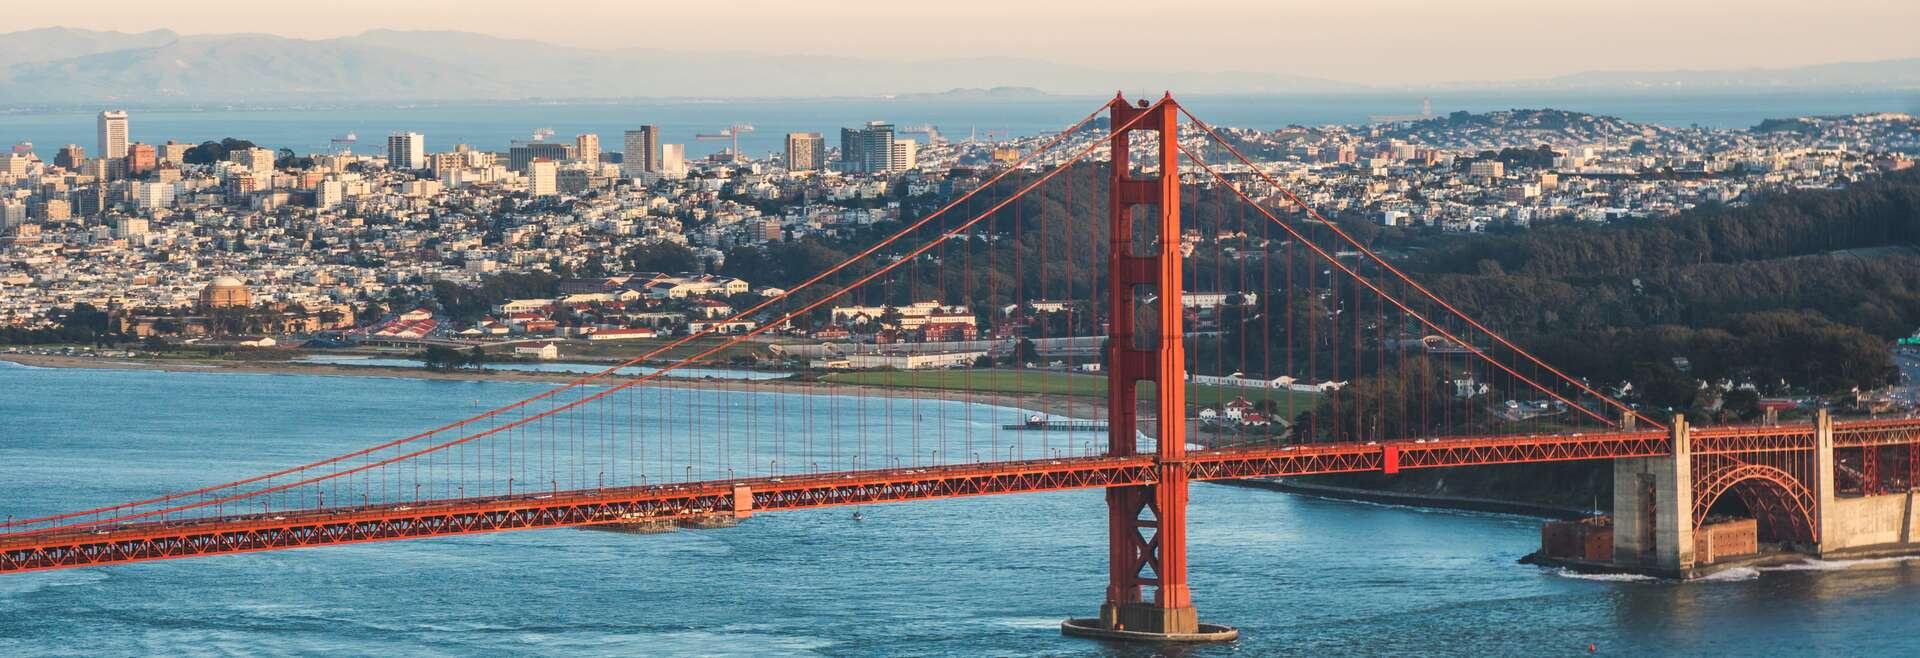 Séjour linguistique États-Unis, San Francisco - At The Teachers Home InTuition San Francisco - Golden Gate Bridge